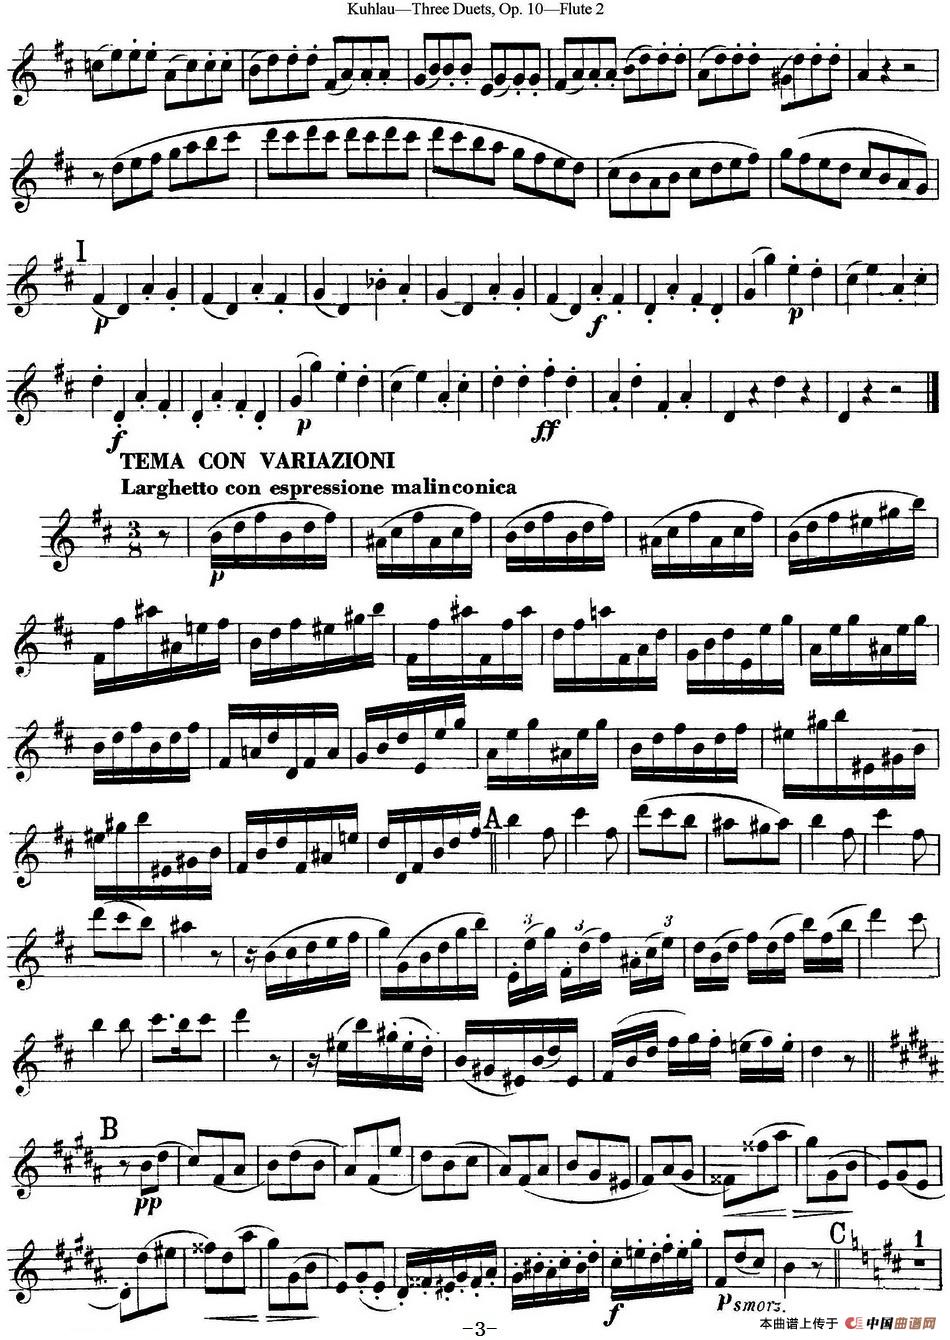 库劳长笛二重奏练习曲Op.10——Flute 2（No.2）